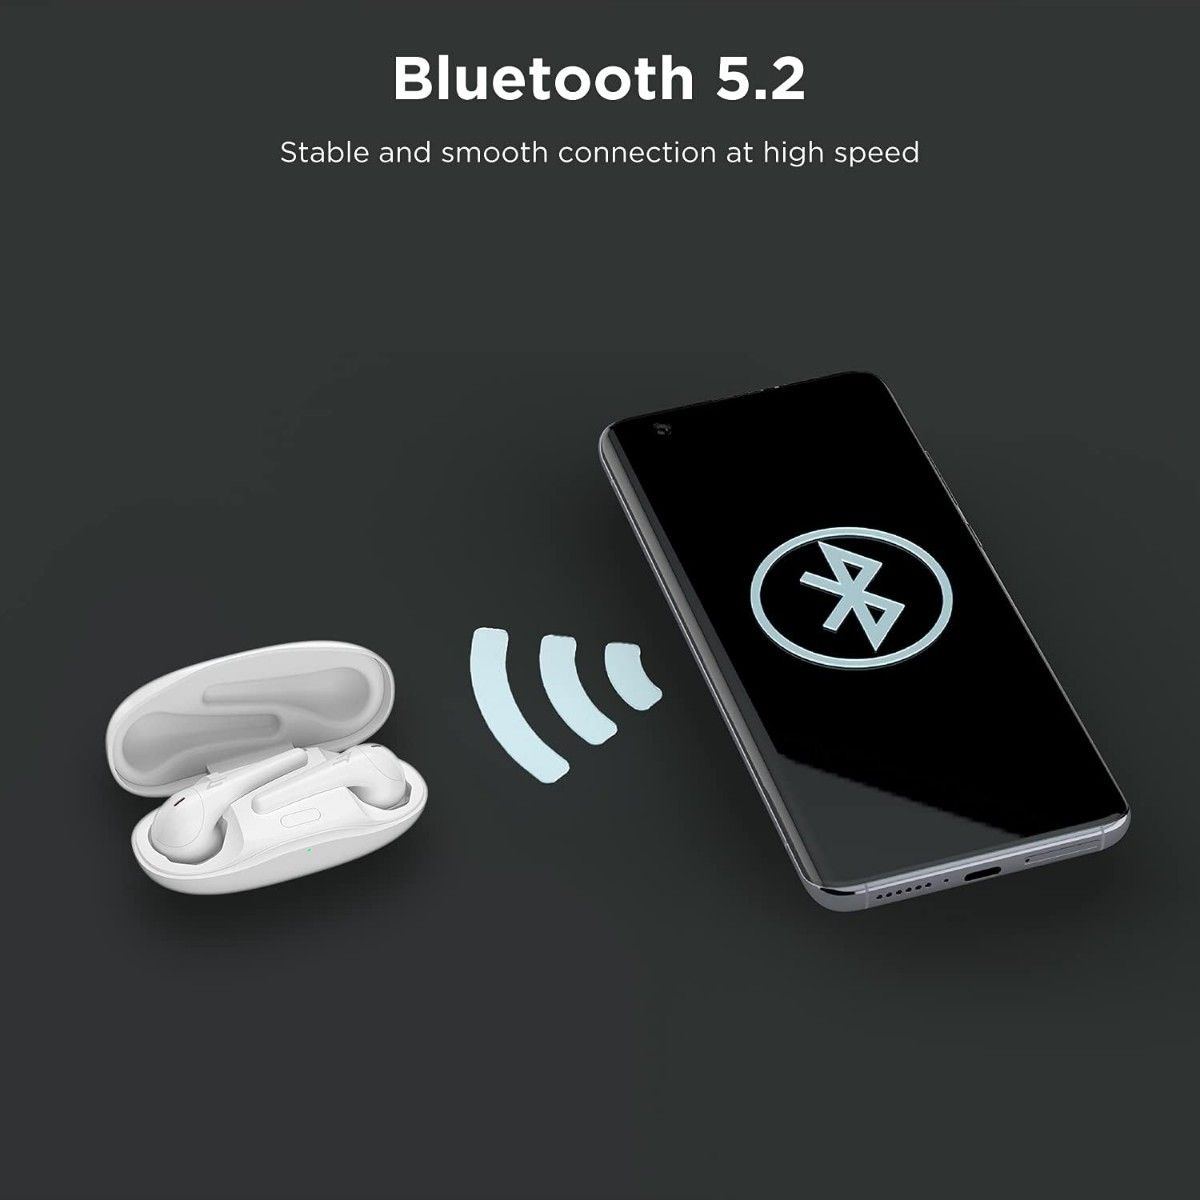 1MORE ワイヤレスイヤホン Bluetooth 5.2 イヤホン 低遅延 ゲームモード ComfoBuds2 (ホワイト)